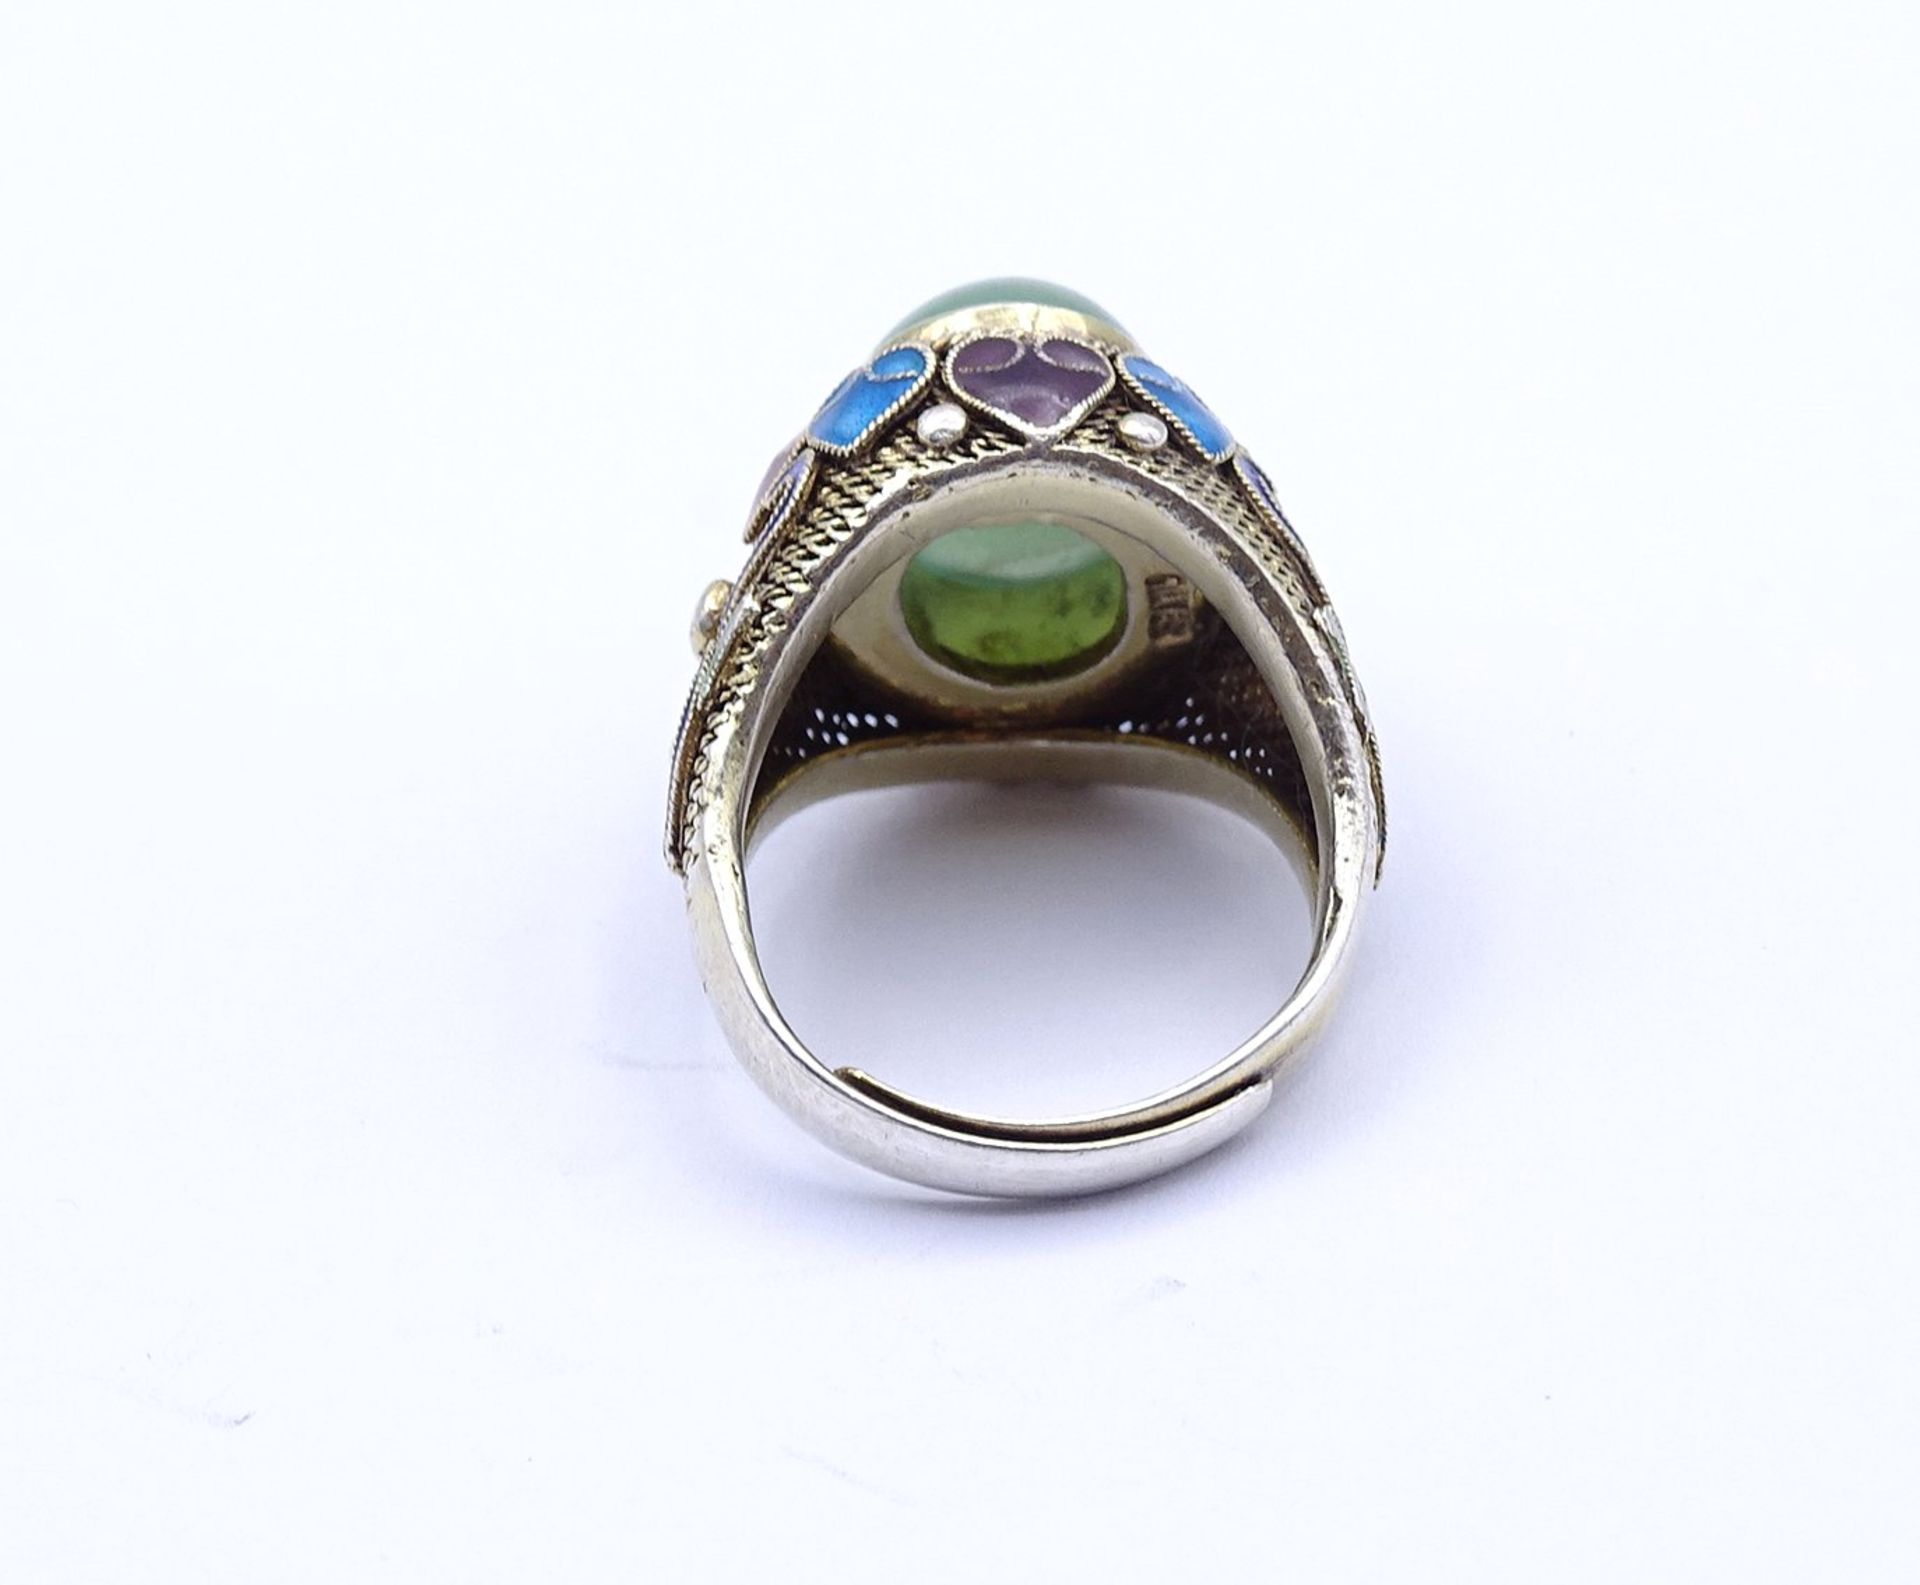 Filigraner emaillierter Silber Ring mit Jade Cabochon, offene Ringschiene, 7,0g. - Bild 4 aus 4